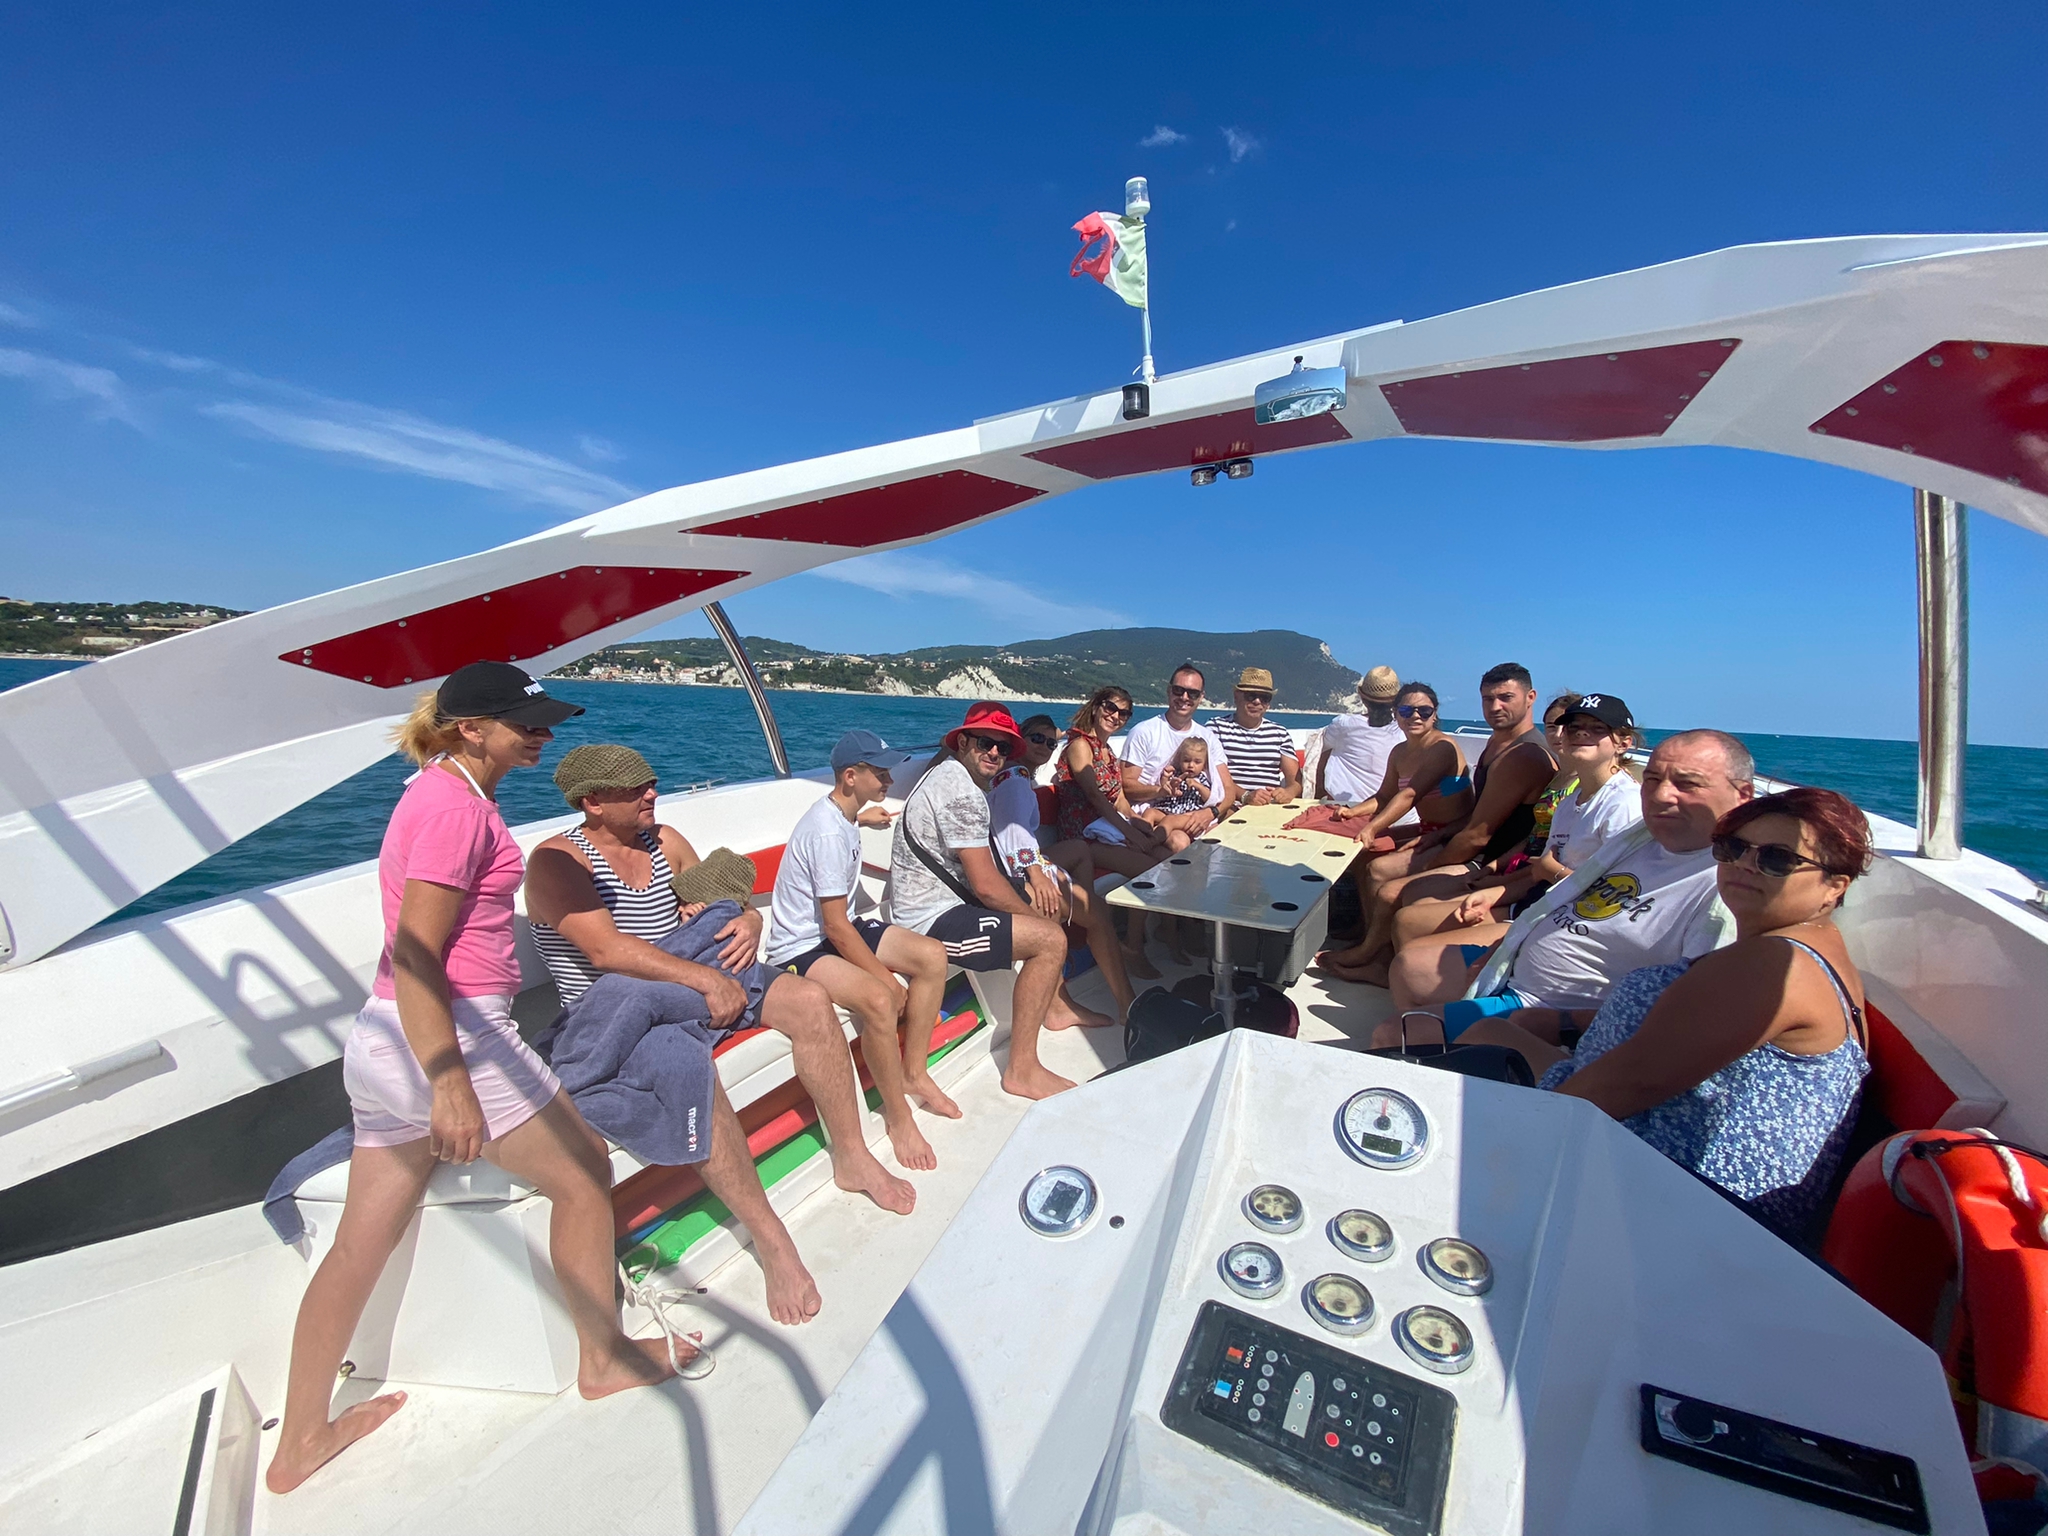 gruppi gita barca famiglia bambini conero due sorelle estate paesaggio bellezze mare adriatico tutti insieme buffet bevande onde 